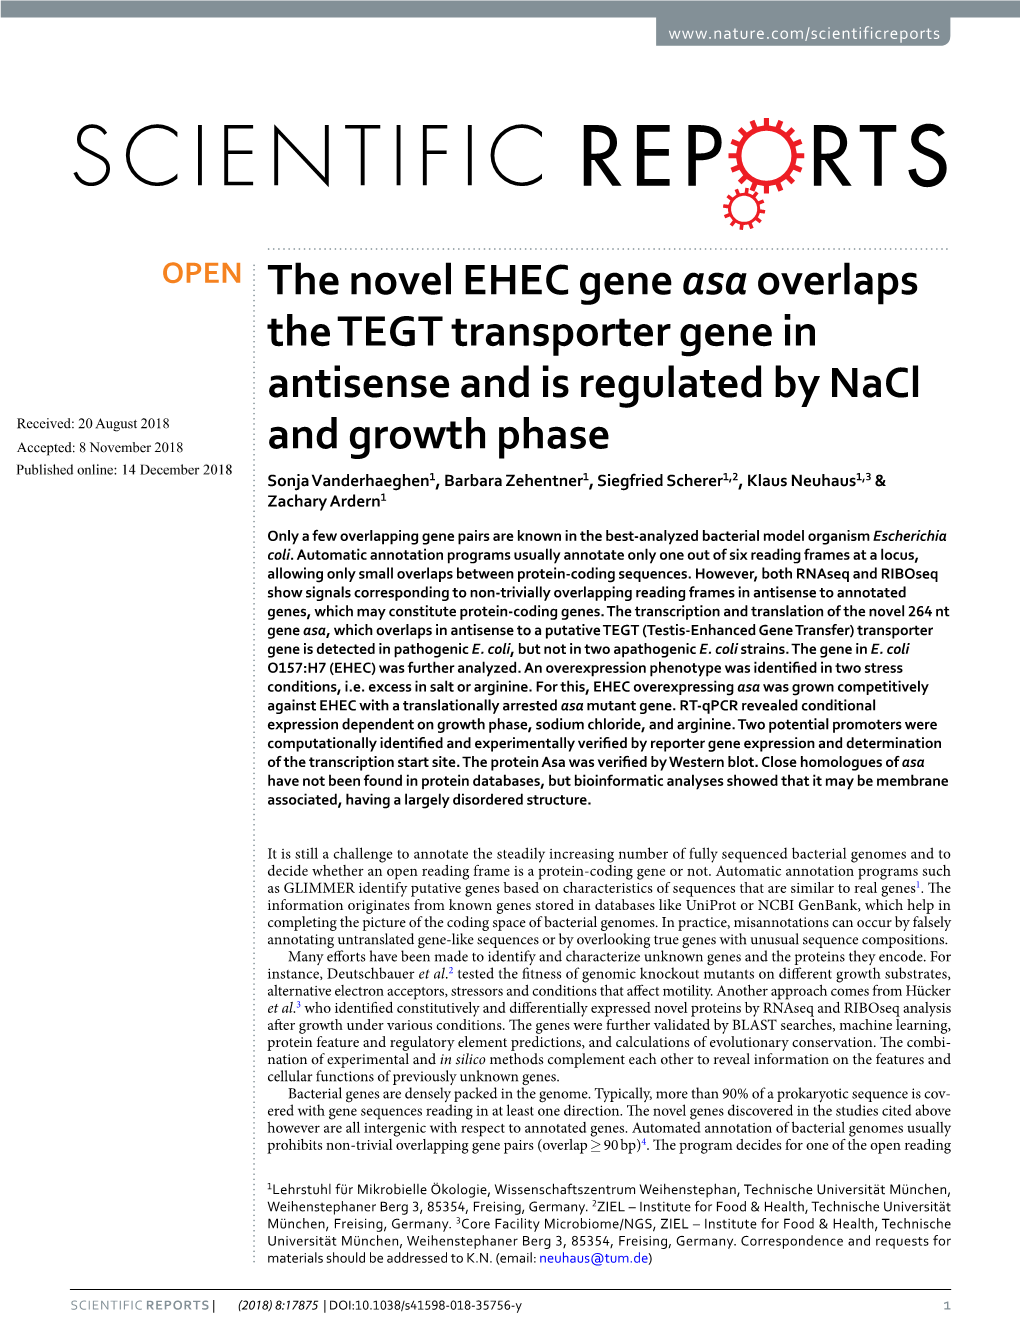 The Novel EHEC Gene Asa Overlaps the TEGT Transporter Gene In